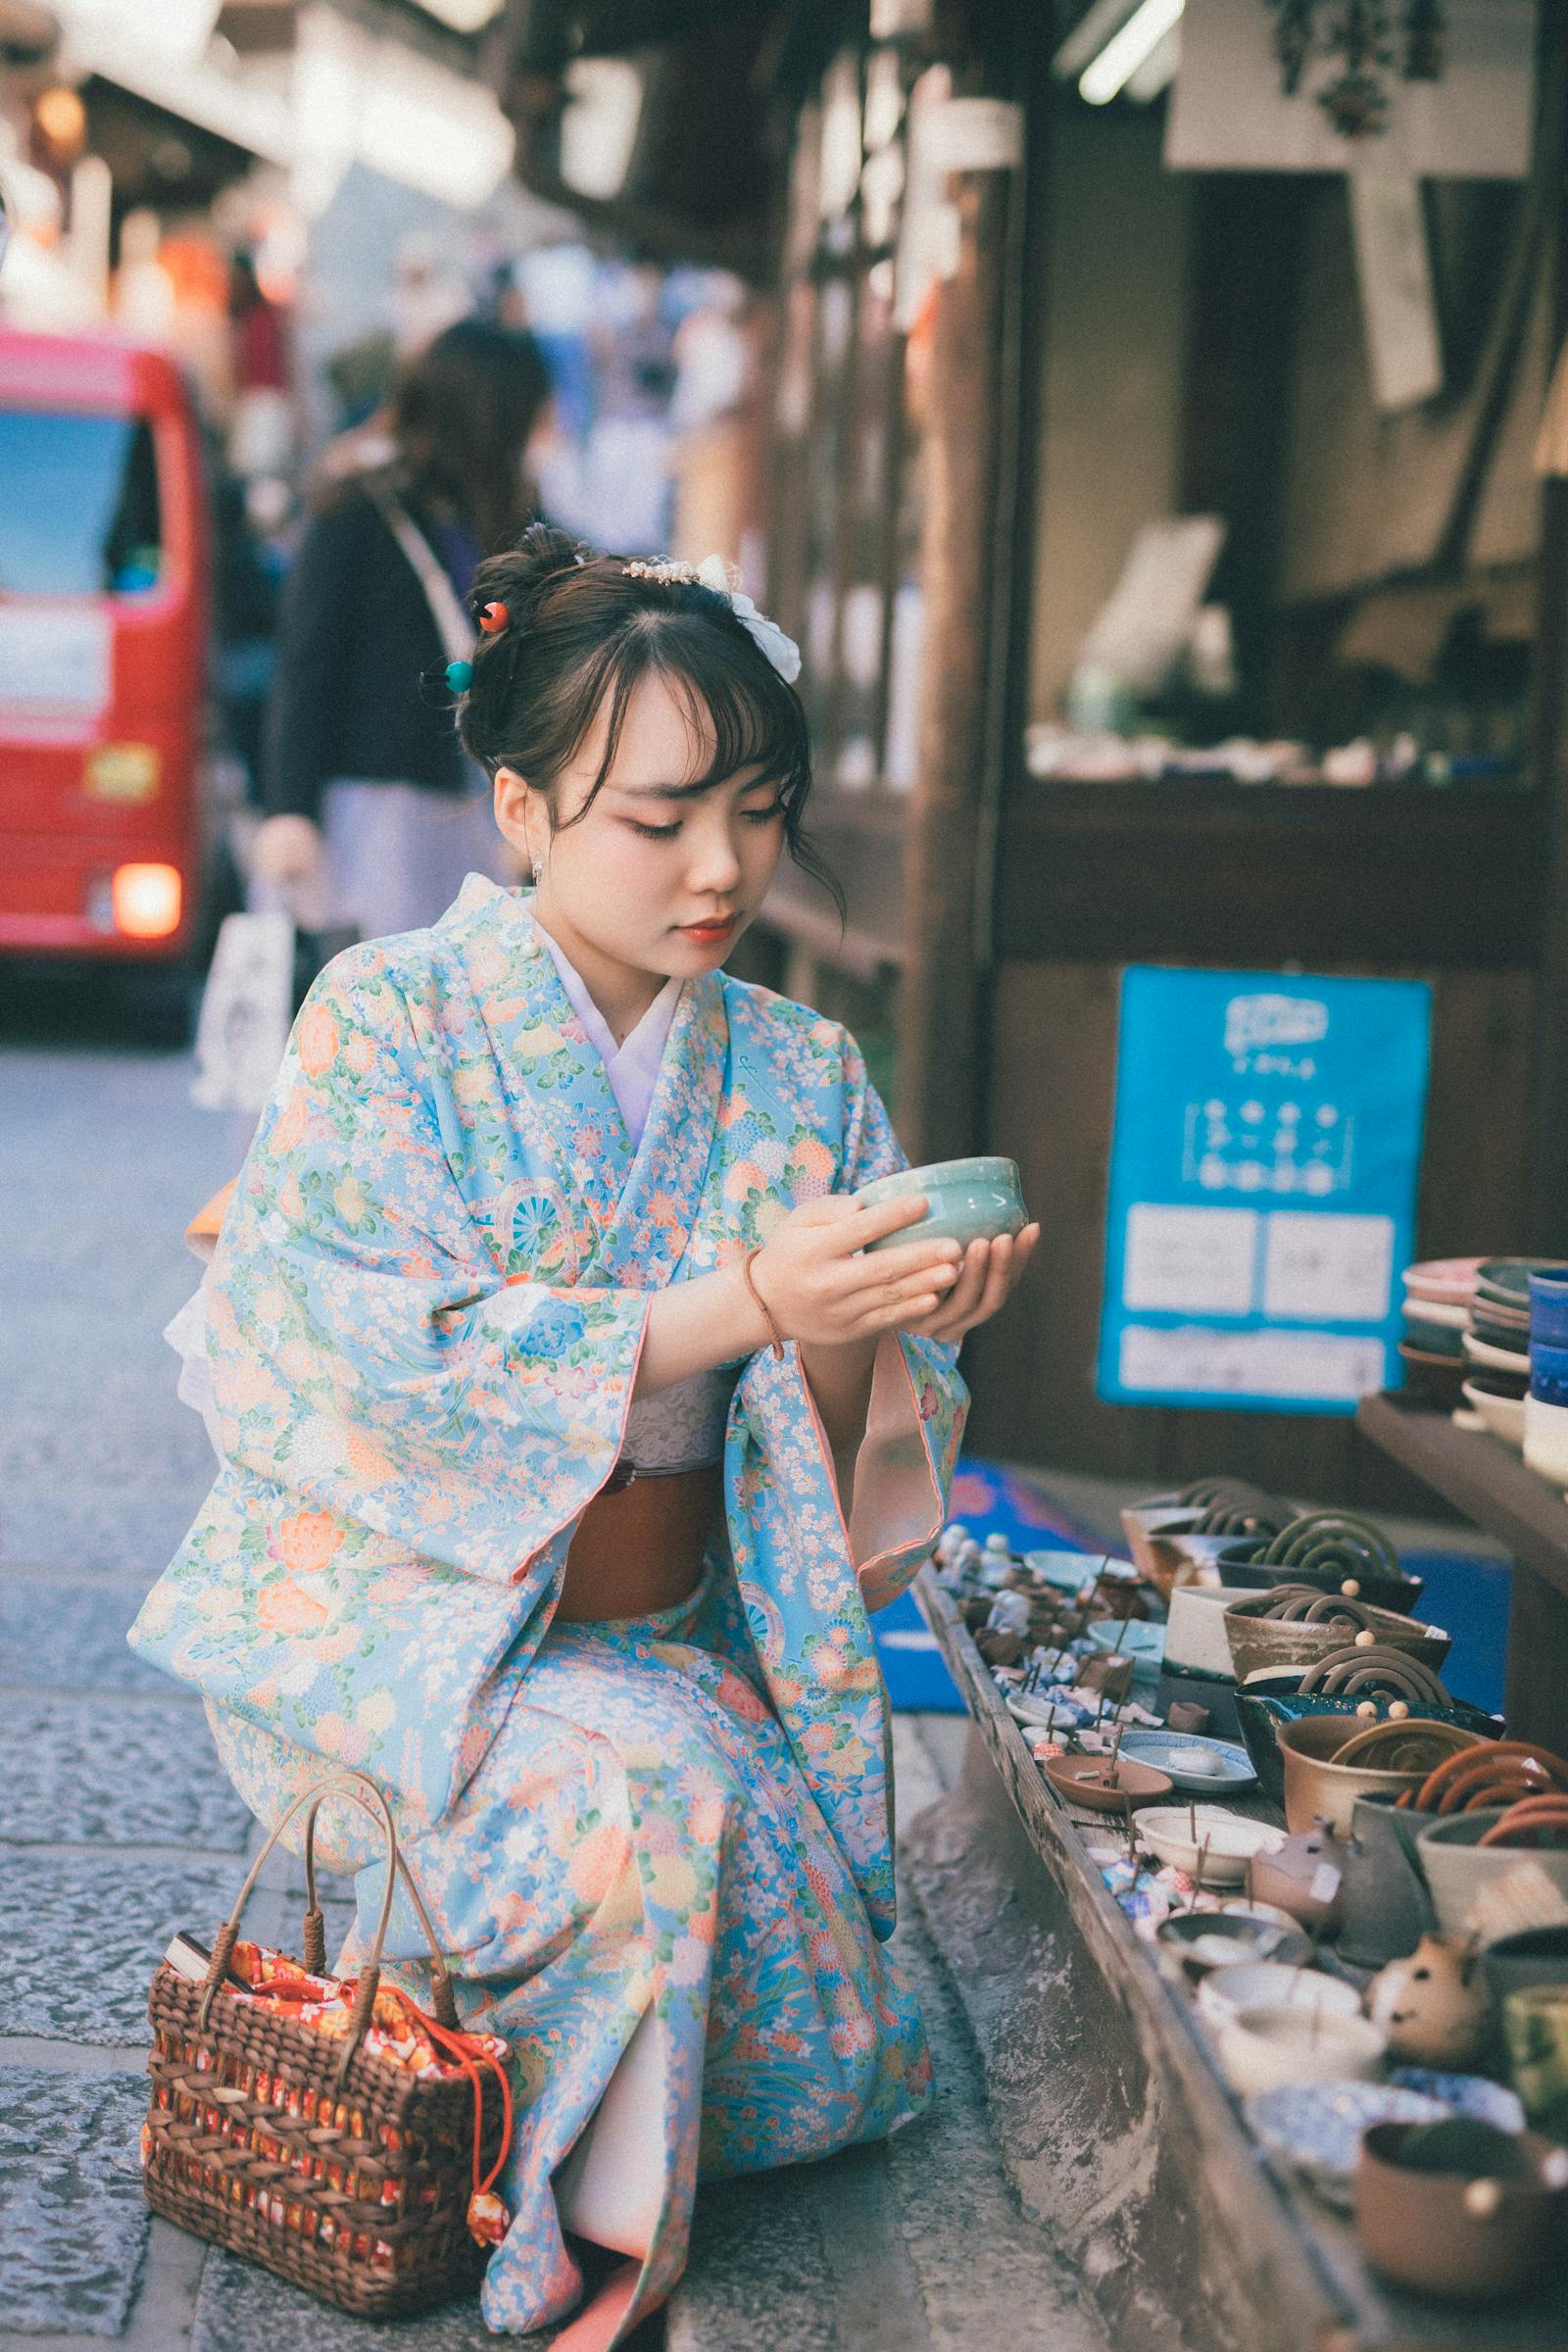 1,000,000+张最精彩的“日本女人”图片 · 100%免费下载 · Pexels素材图片